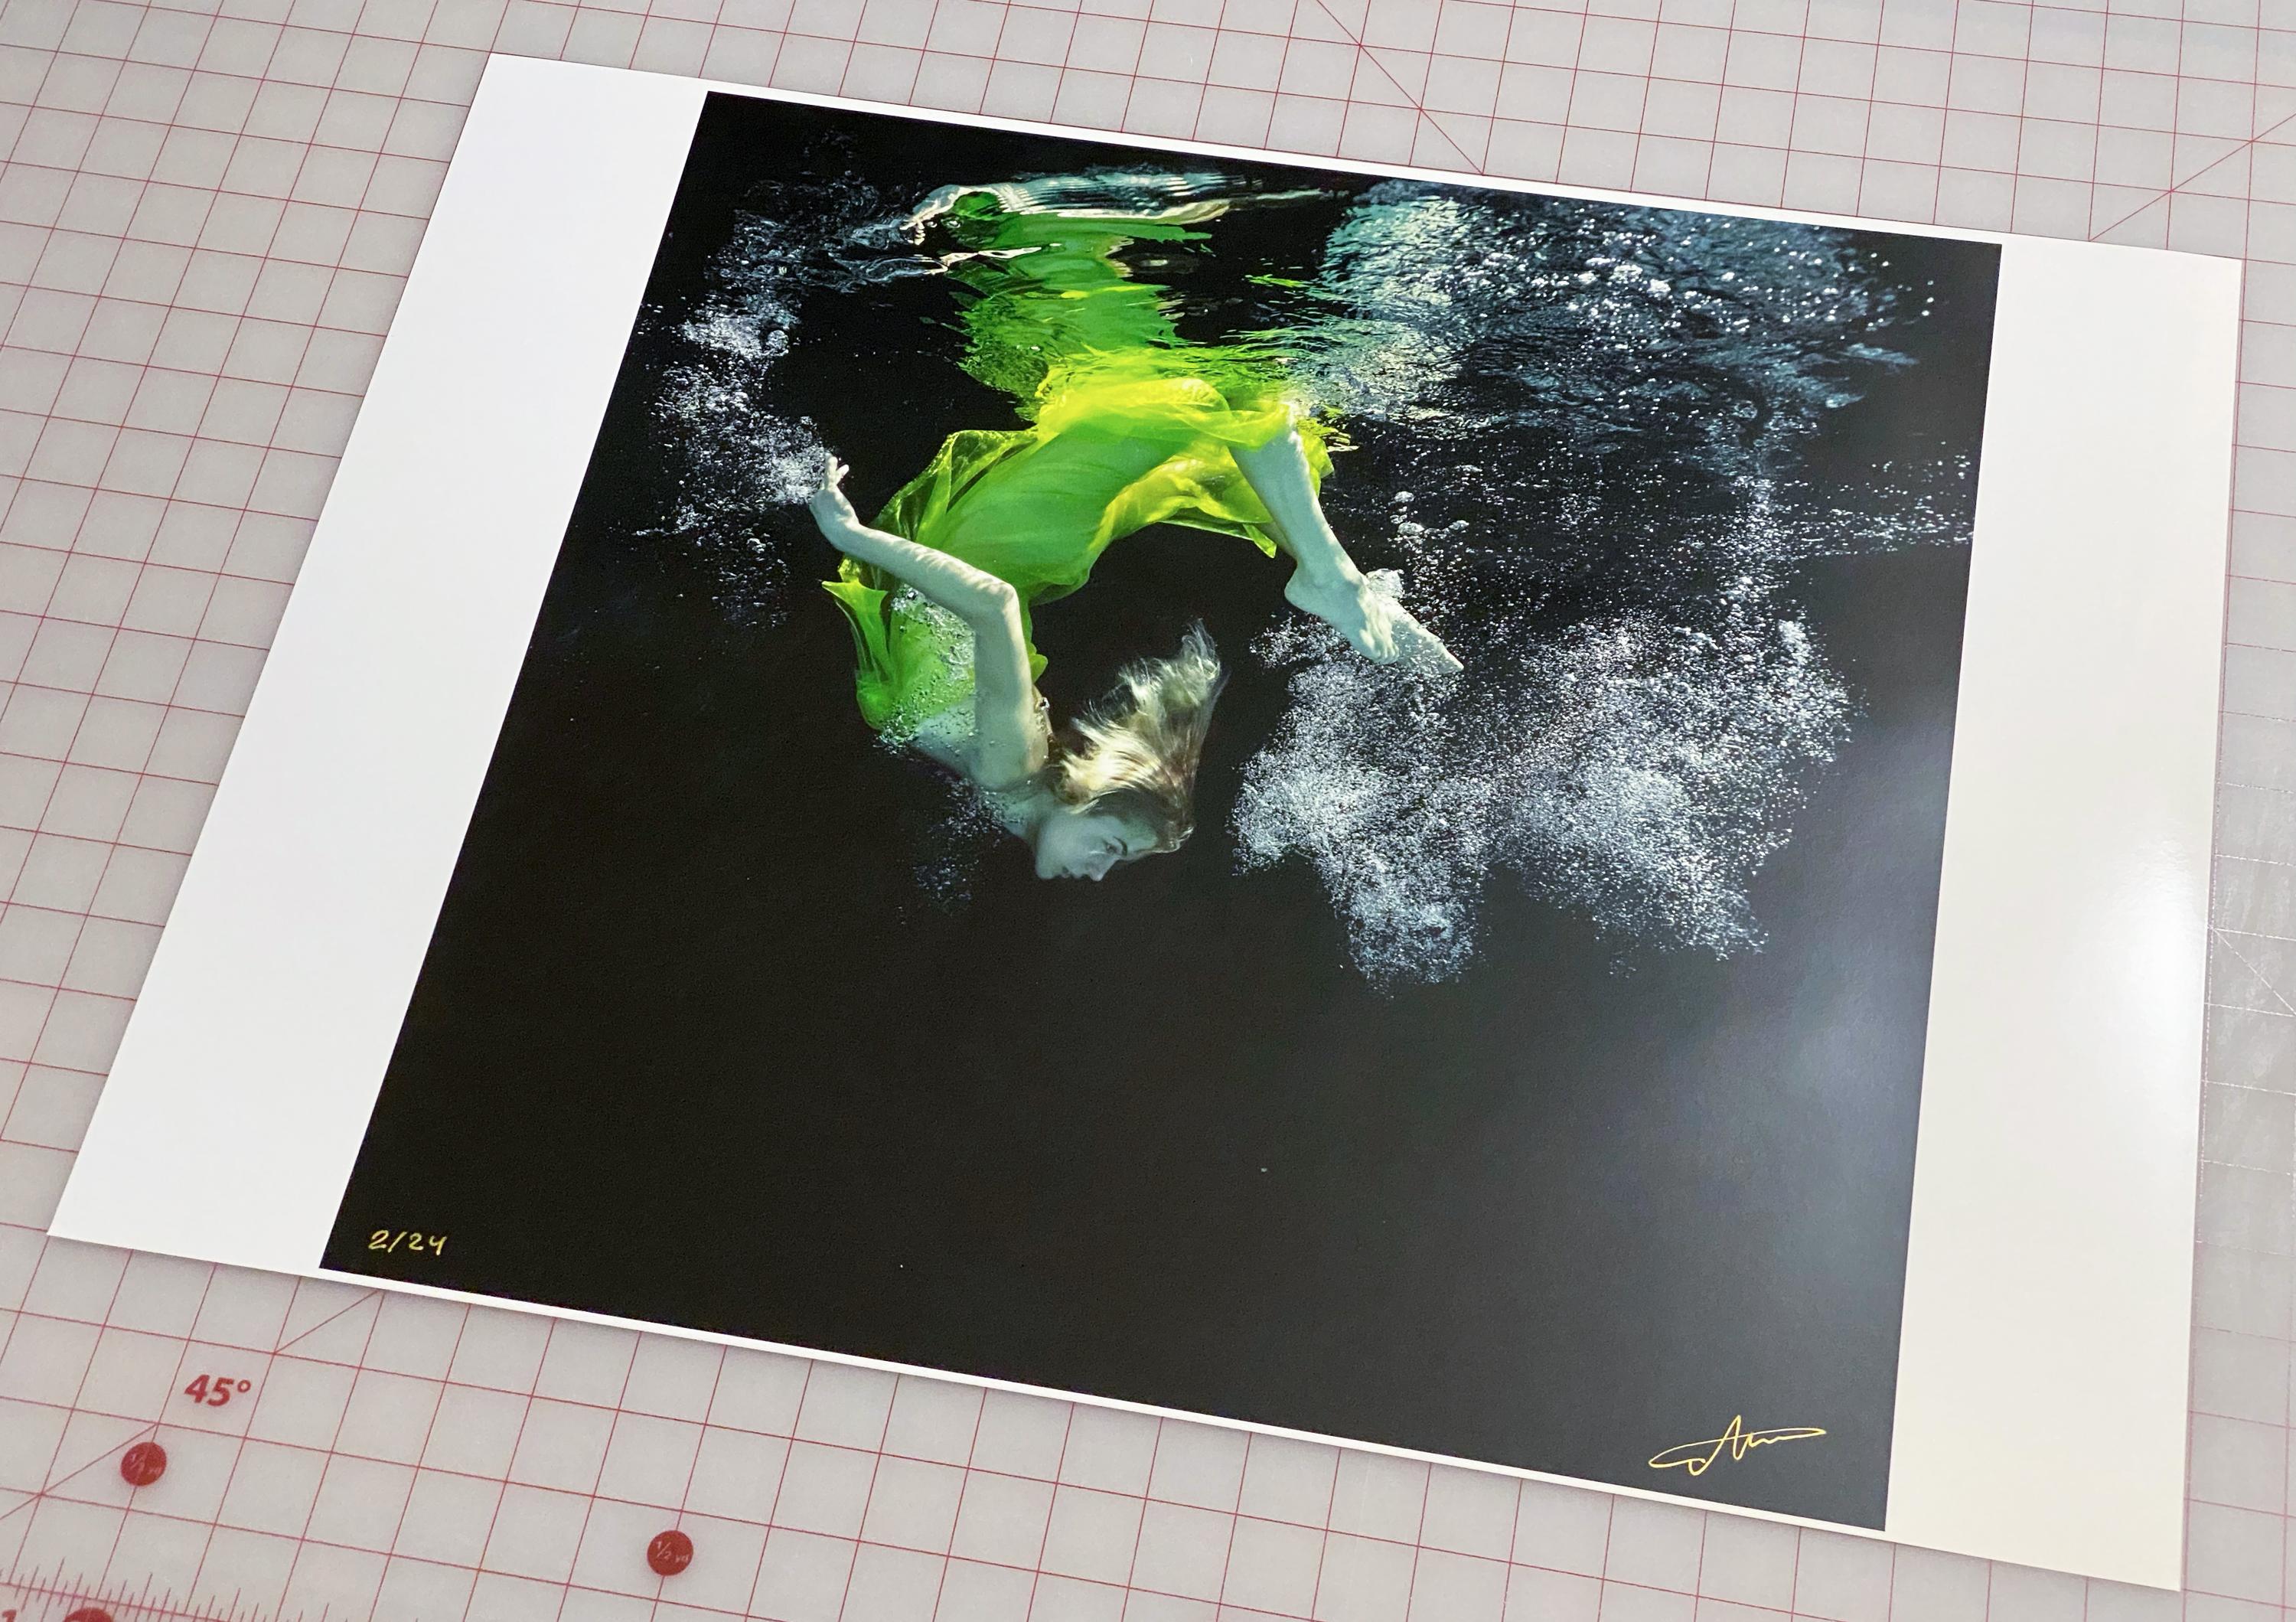 Ein Unterwasserfoto von einer jungen Frau, die in leuchtend grünen Tüll gehüllt ist. 

Vom Künstler signierter Originaldruck in Galeriequalität. 
Digitaler Pigmentdruck auf Archivierungspapier mit Metallic-Finish. 
Limitierte Auflage von 24